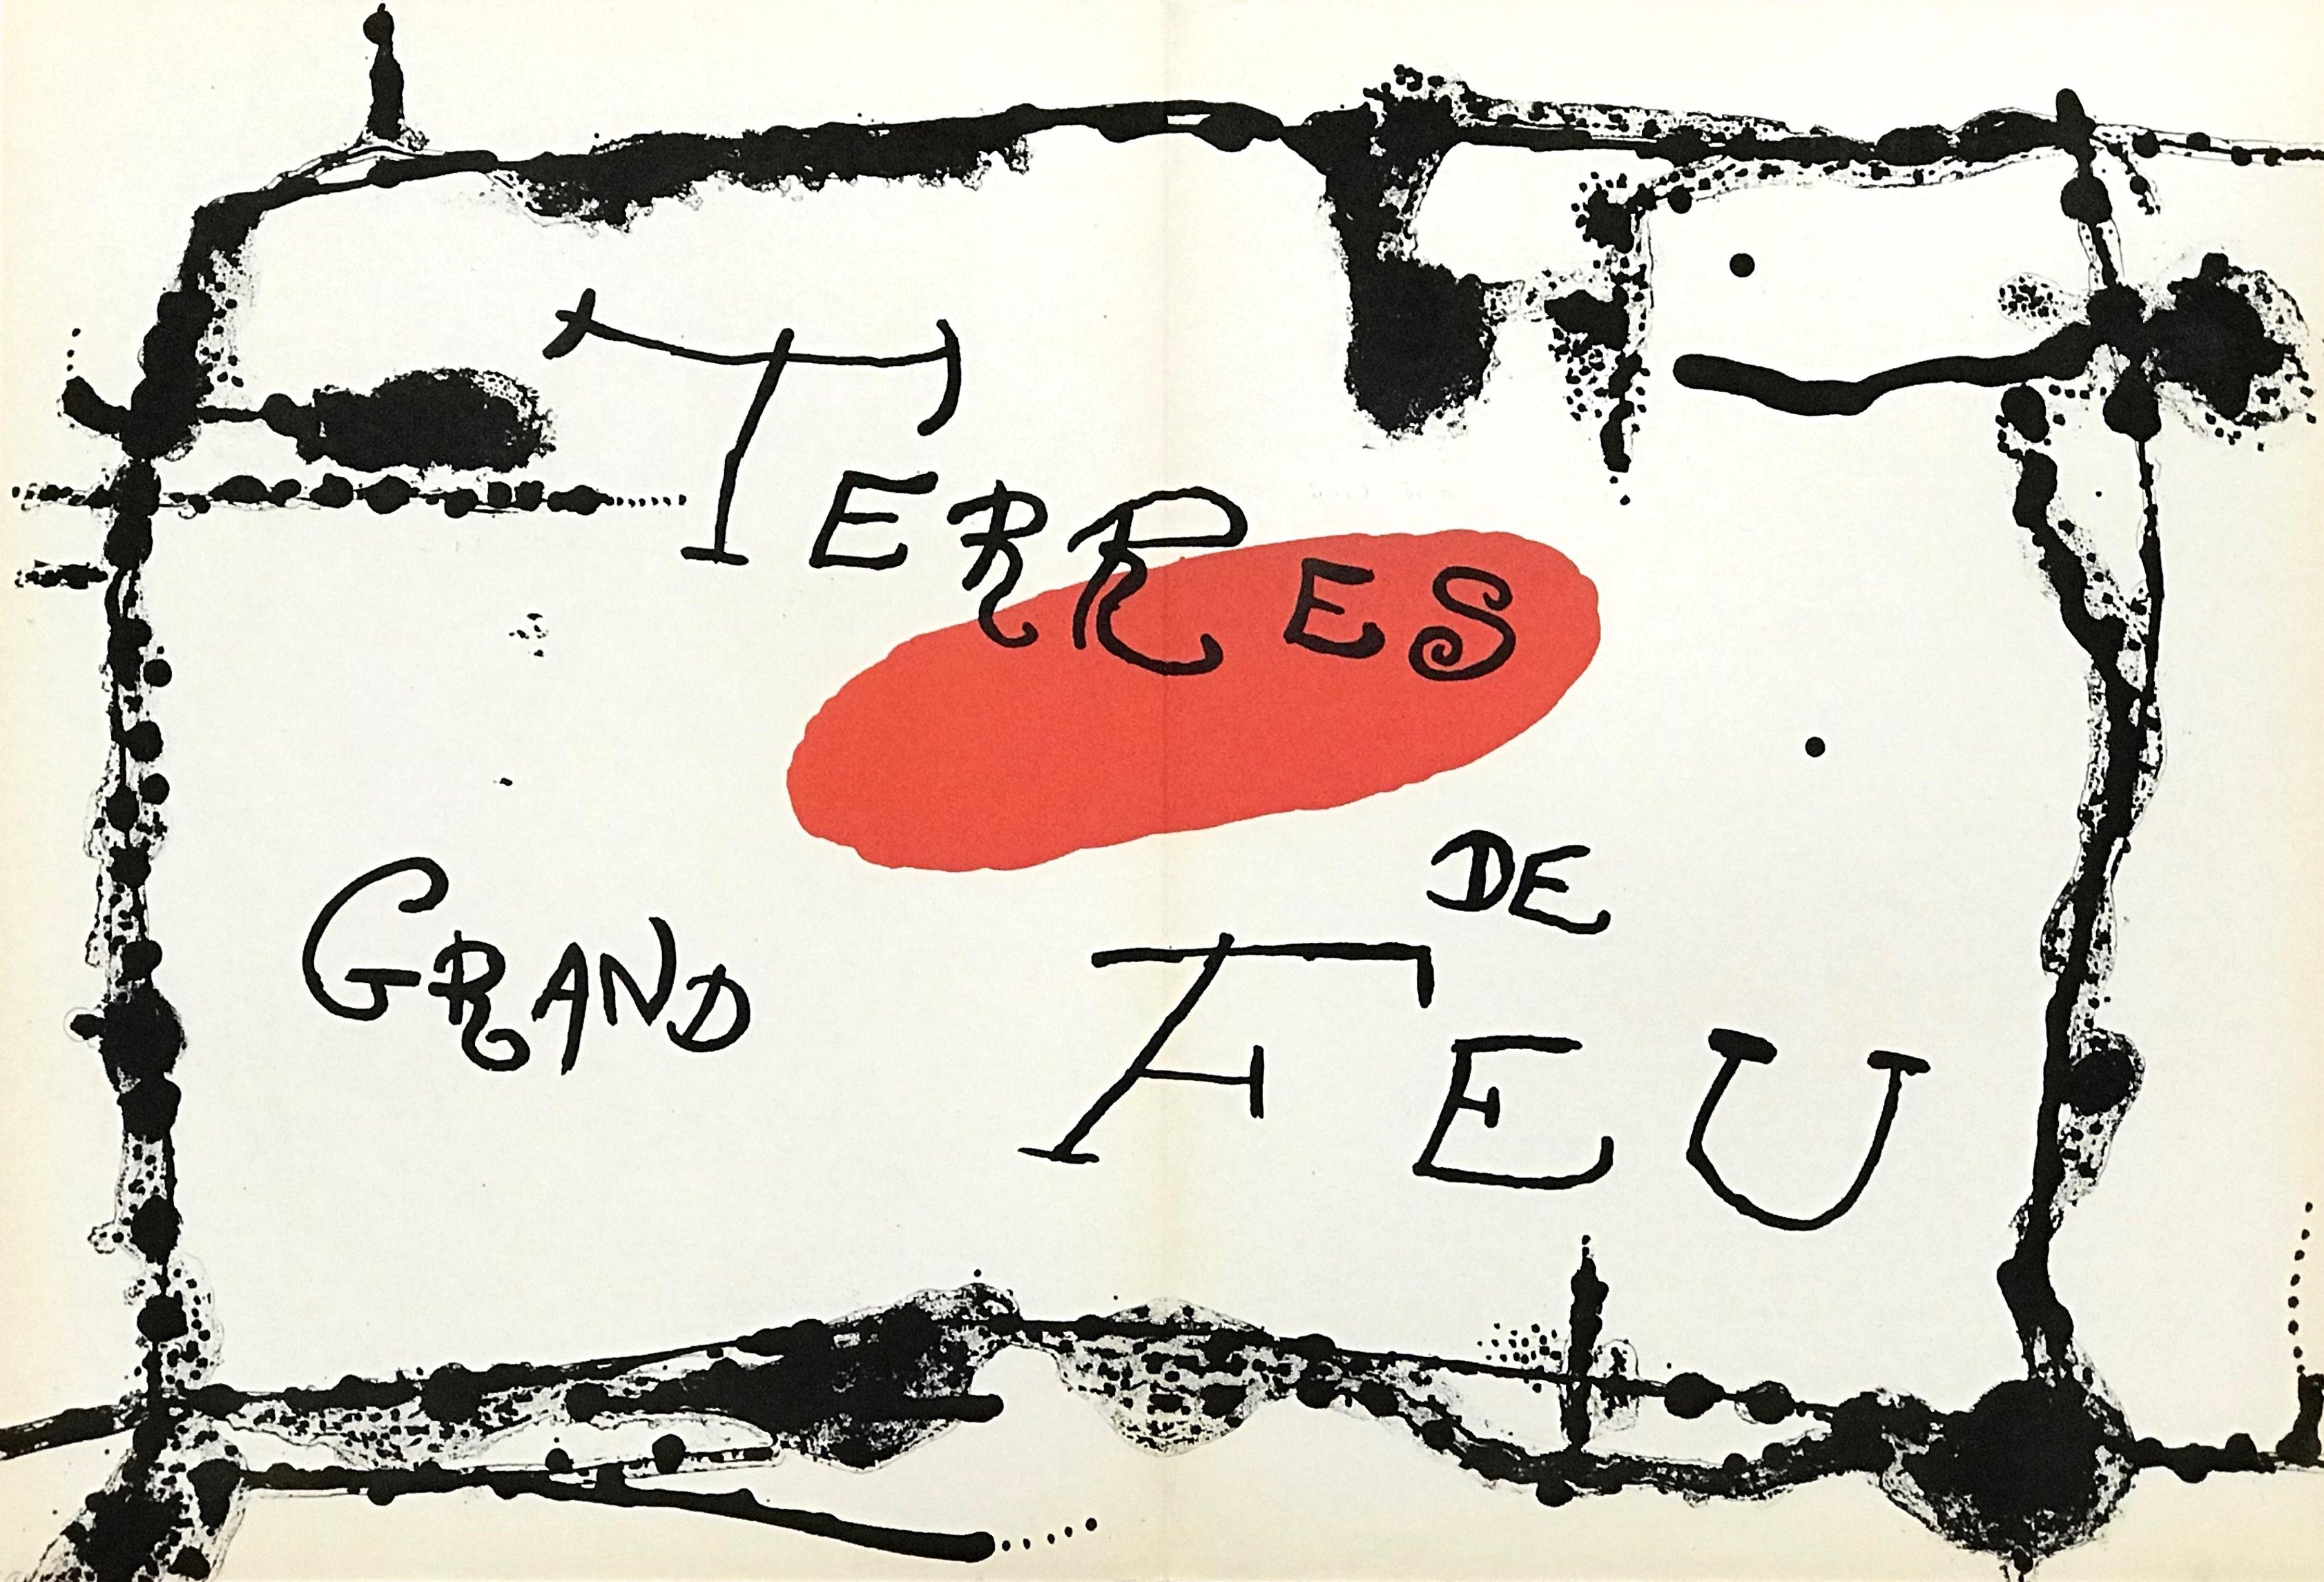 "Terres de Grand Feu" original lithograph - Print by Joan Miró